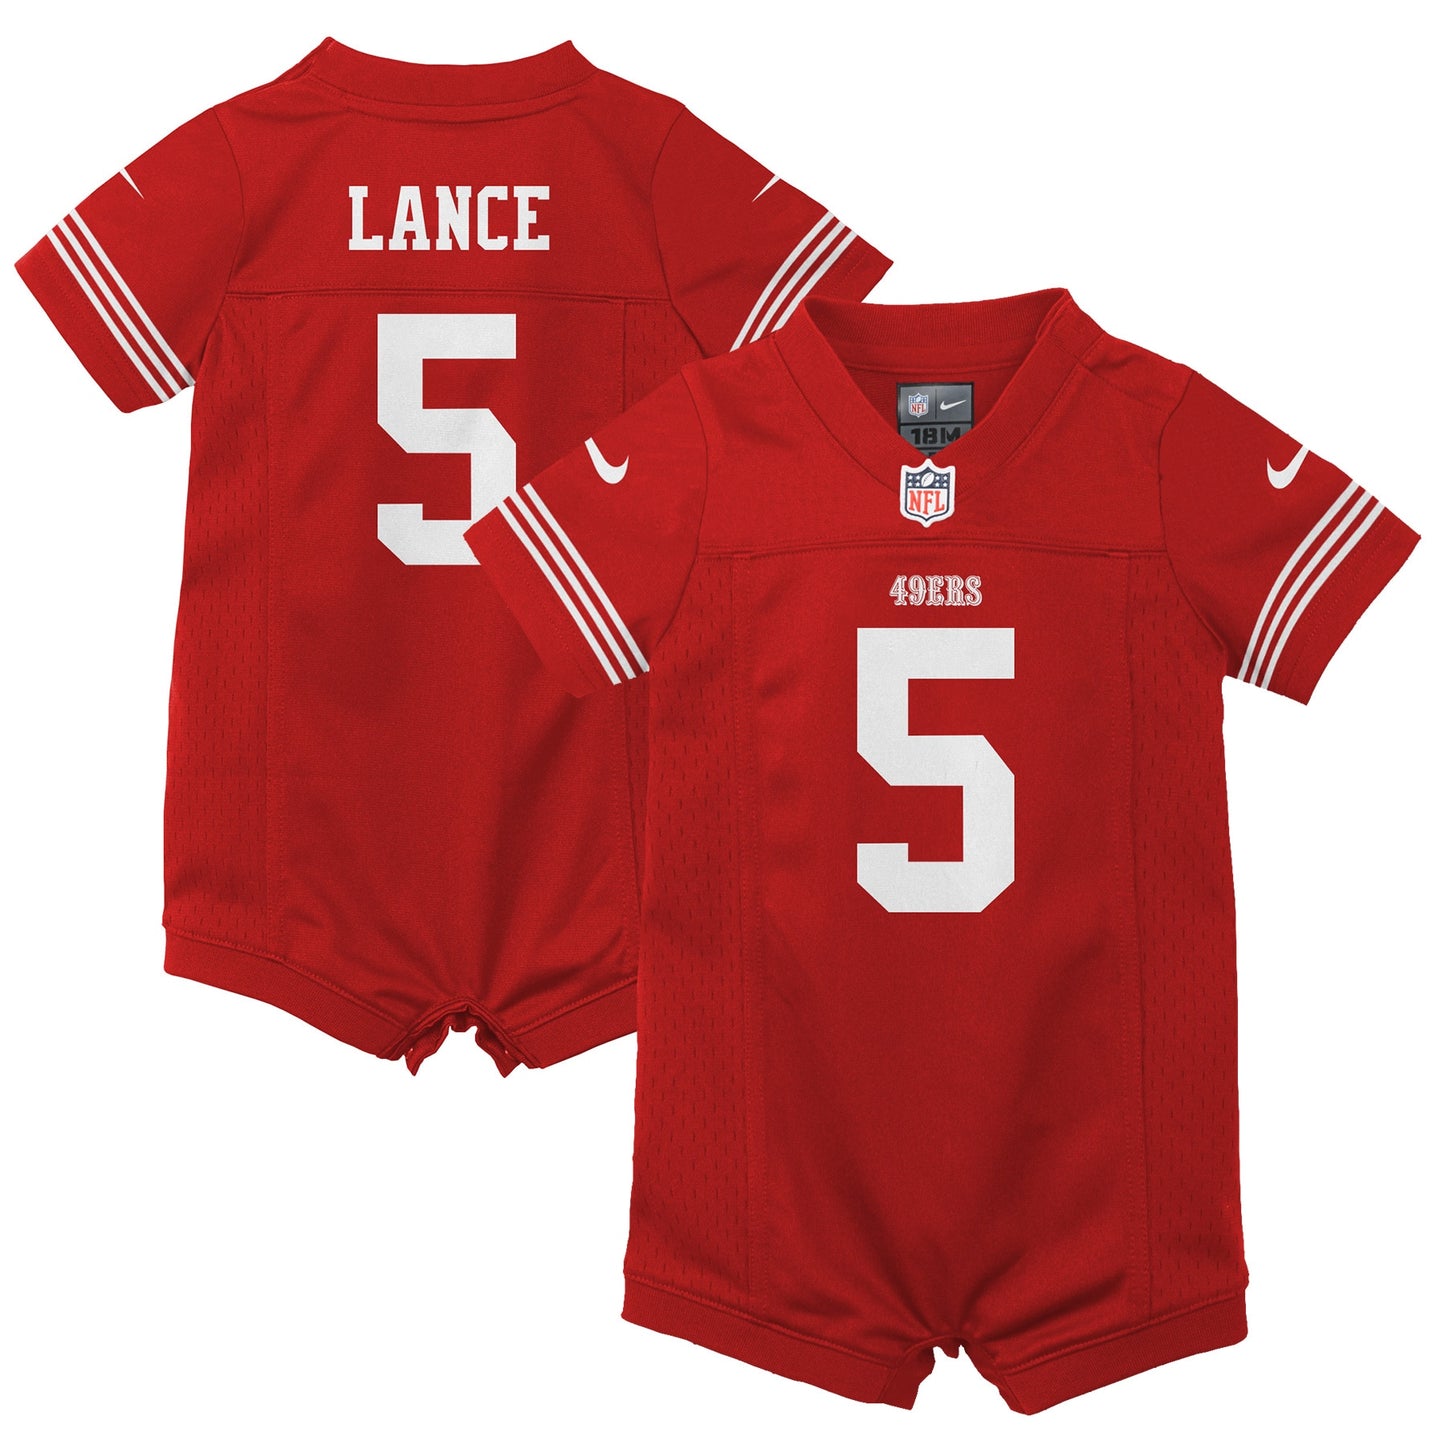 Trey Lance San Francisco 49ers Nike Infant Romper Game Jersey - Scarlet